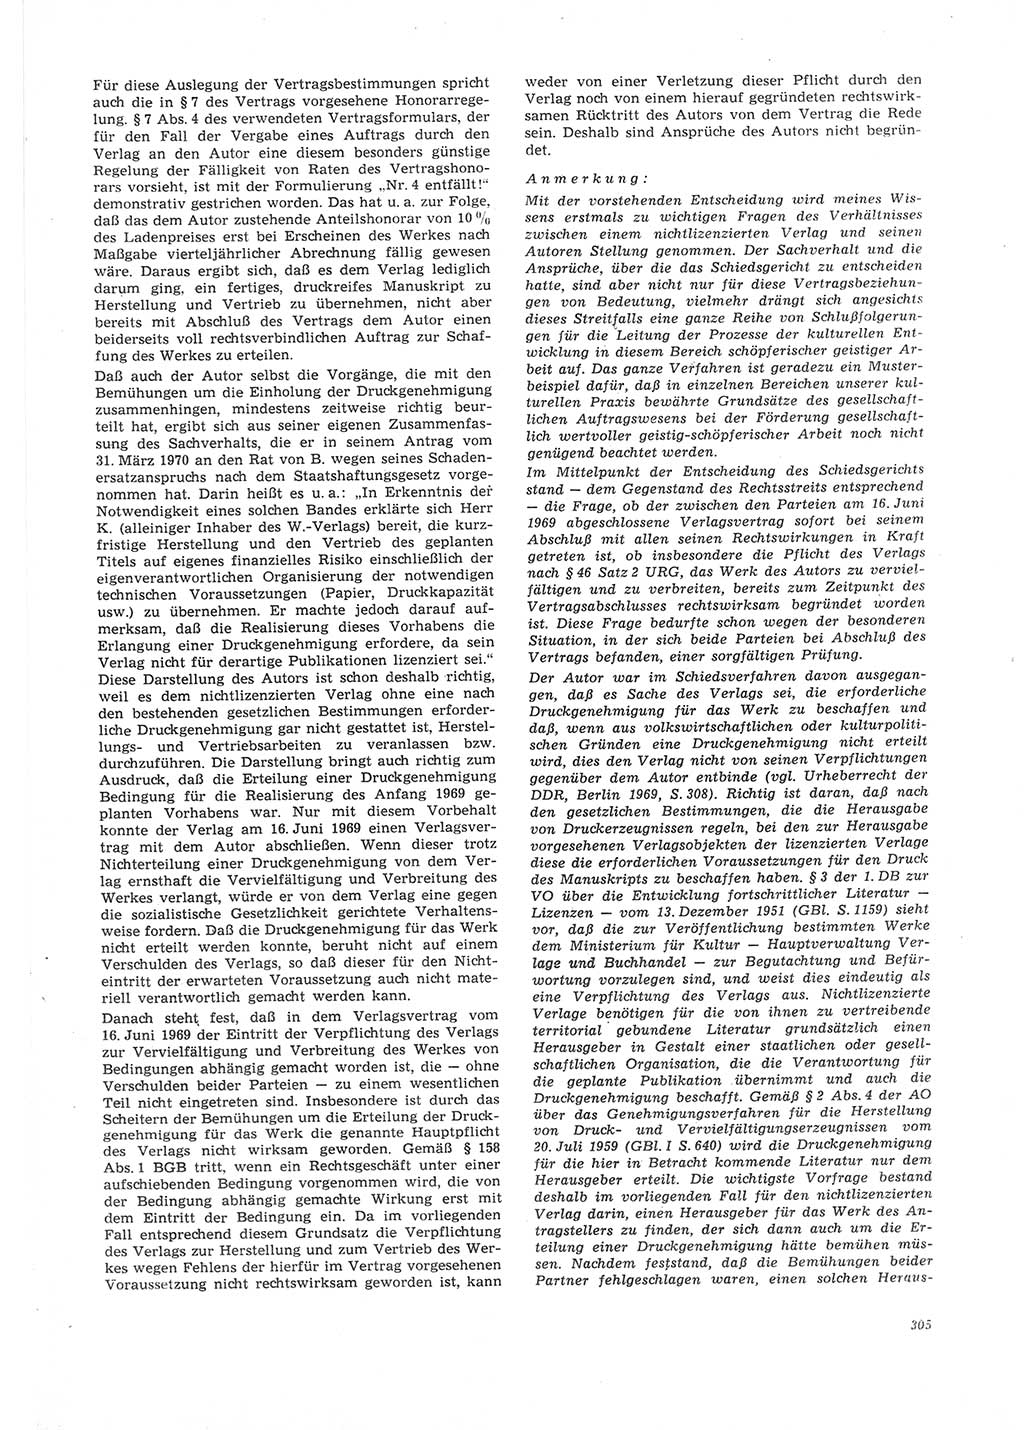 Neue Justiz (NJ), Zeitschrift für Recht und Rechtswissenschaft [Deutsche Demokratische Republik (DDR)], 26. Jahrgang 1972, Seite 305 (NJ DDR 1972, S. 305)